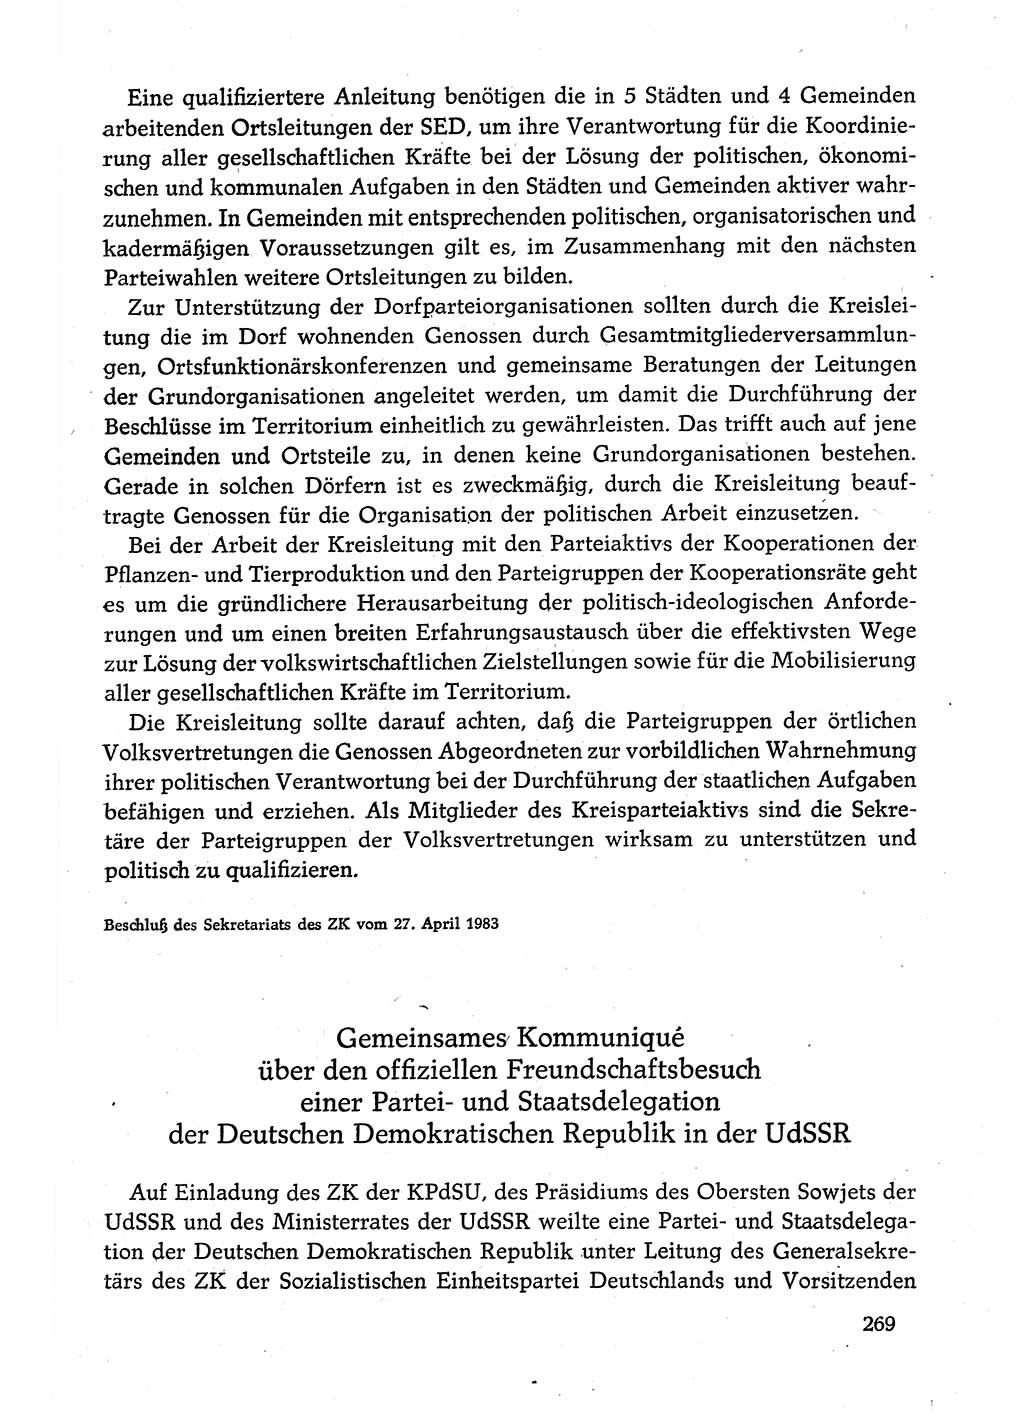 Dokumente der Sozialistischen Einheitspartei Deutschlands (SED) [Deutsche Demokratische Republik (DDR)] 1982-1983, Seite 269 (Dok. SED DDR 1982-1983, S. 269)